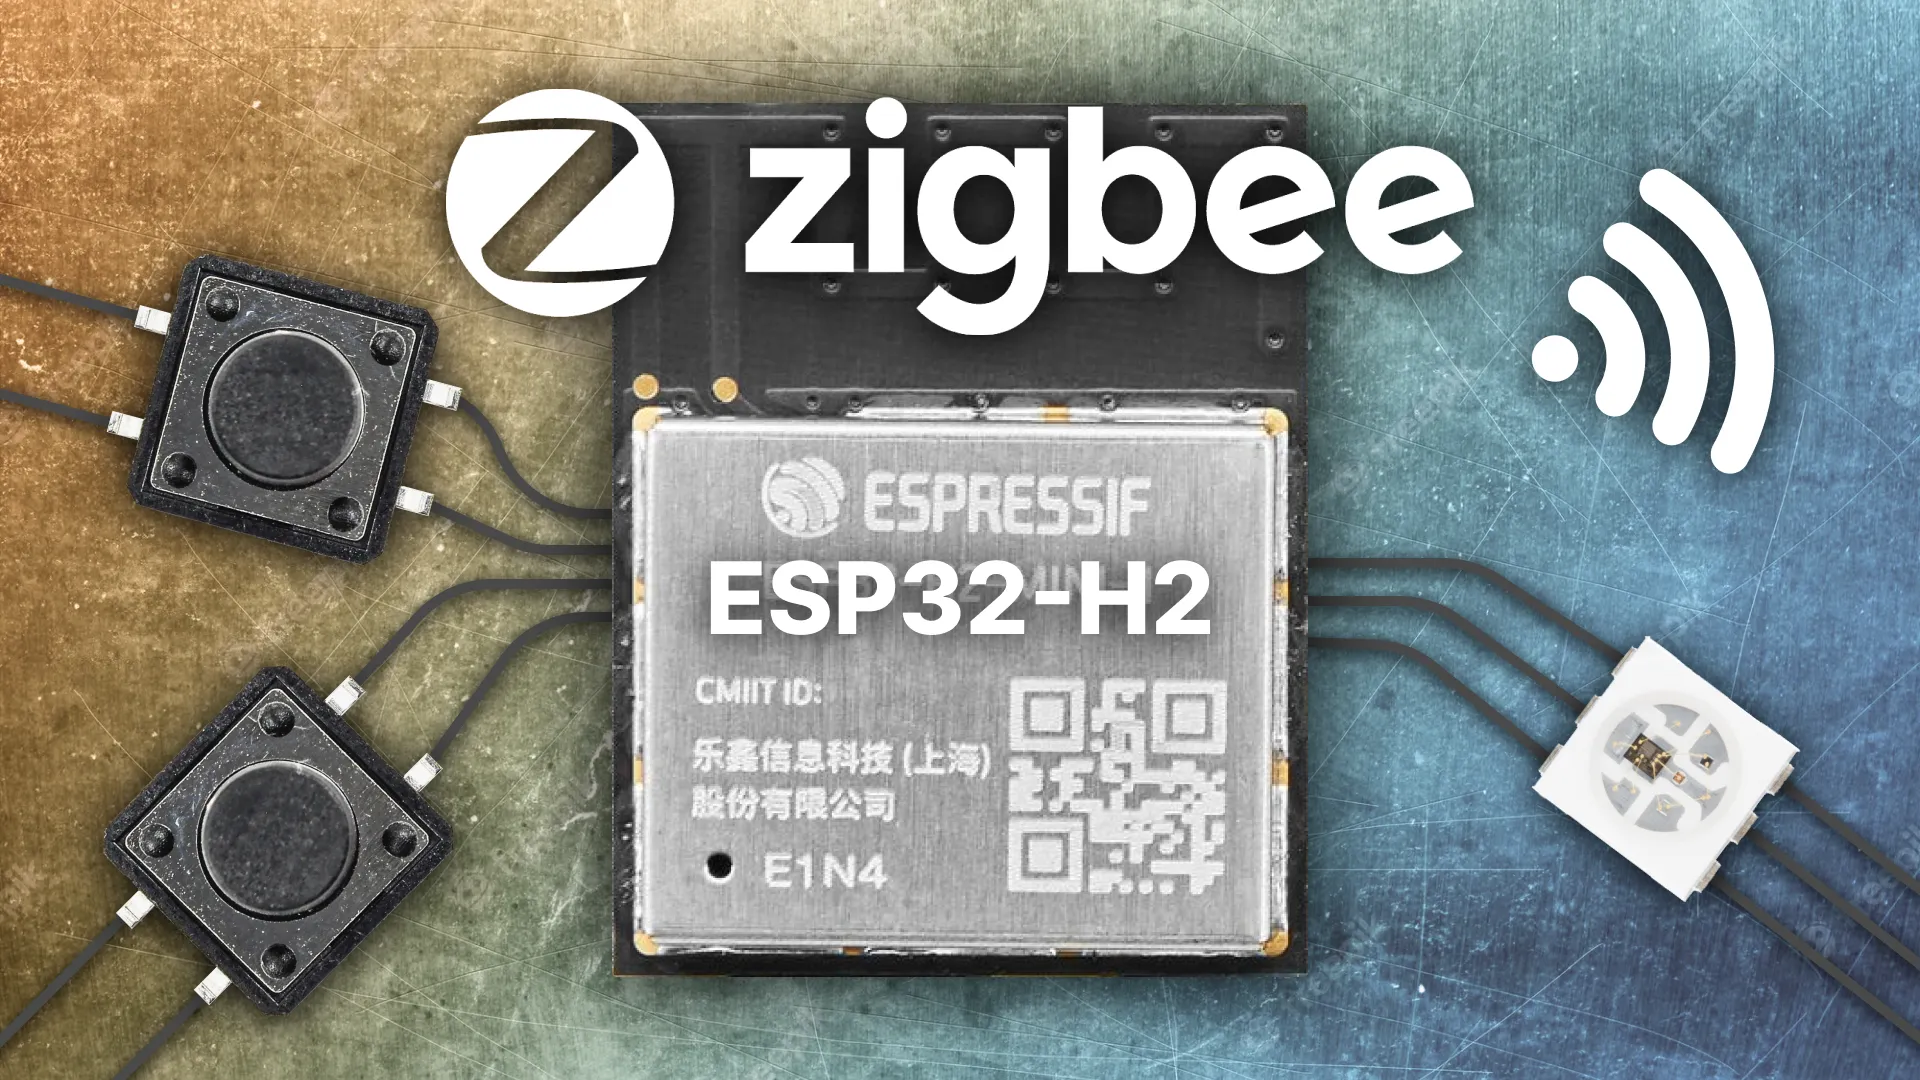 Fabriquez votre appareil domotique Zigbee avec l'ESP32-H2 ! - GammaTroniques